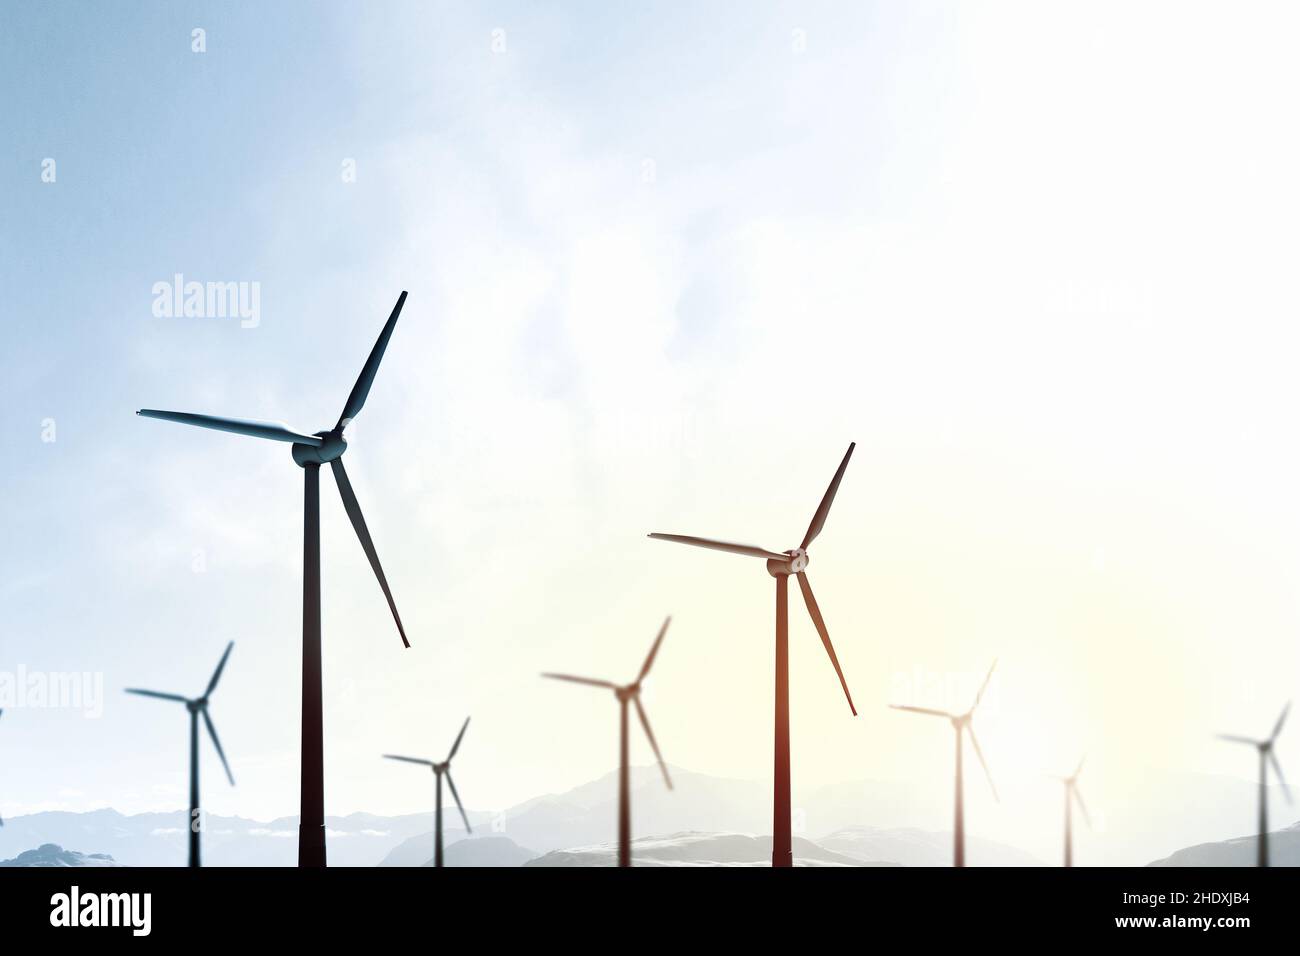 wind turbine, windpark, wind turbines, windparks Stock Photo